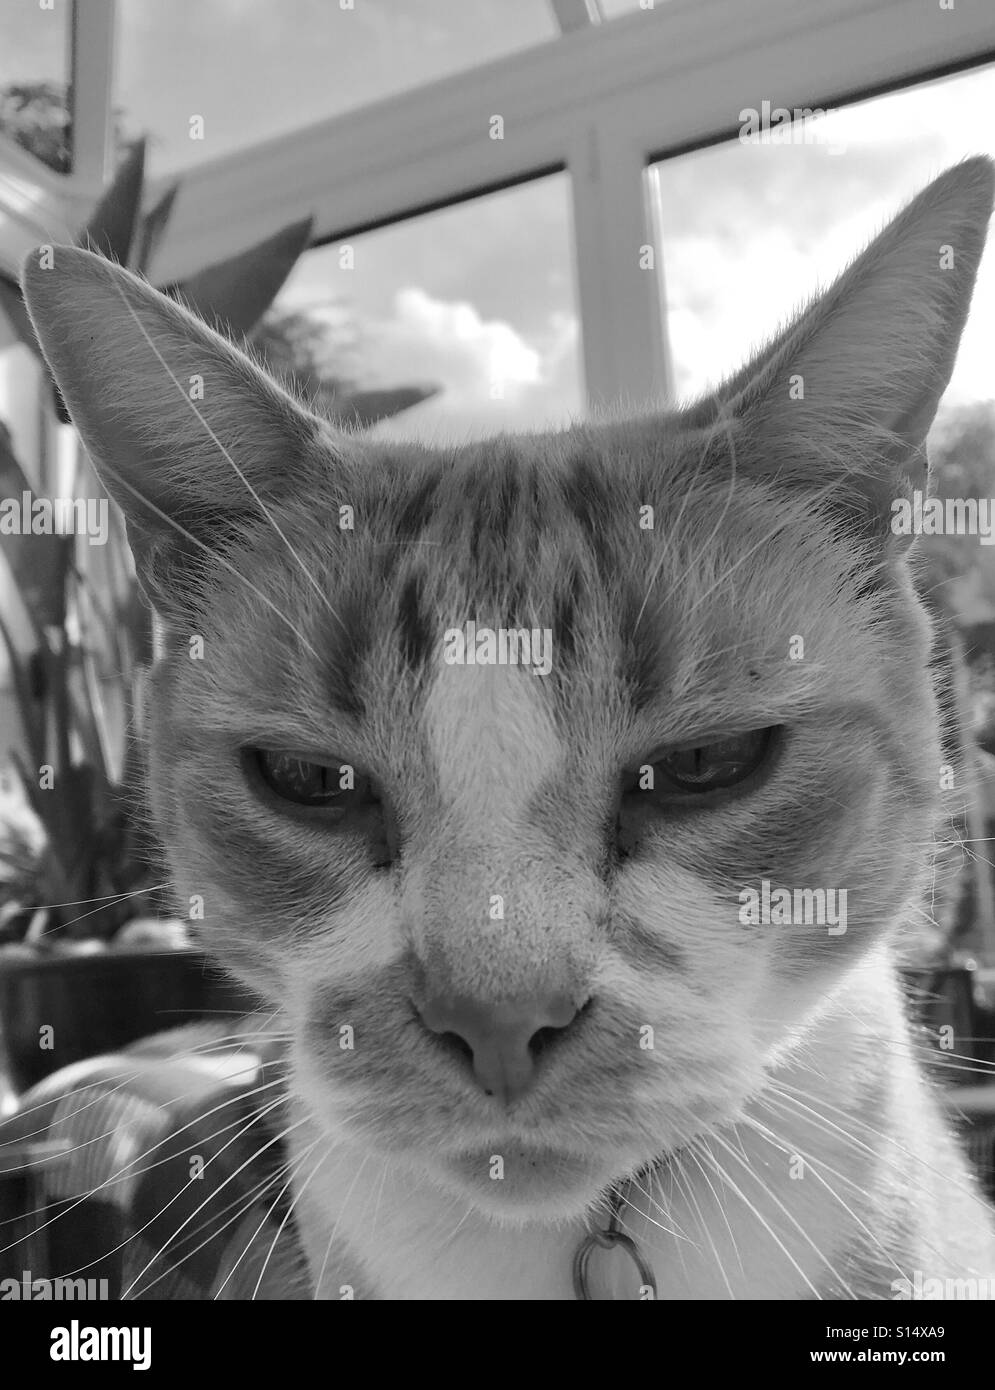 Katze mit mandelförmigen Augen und spitzen Ohren in die Kamera schaut  Stockfotografie - Alamy